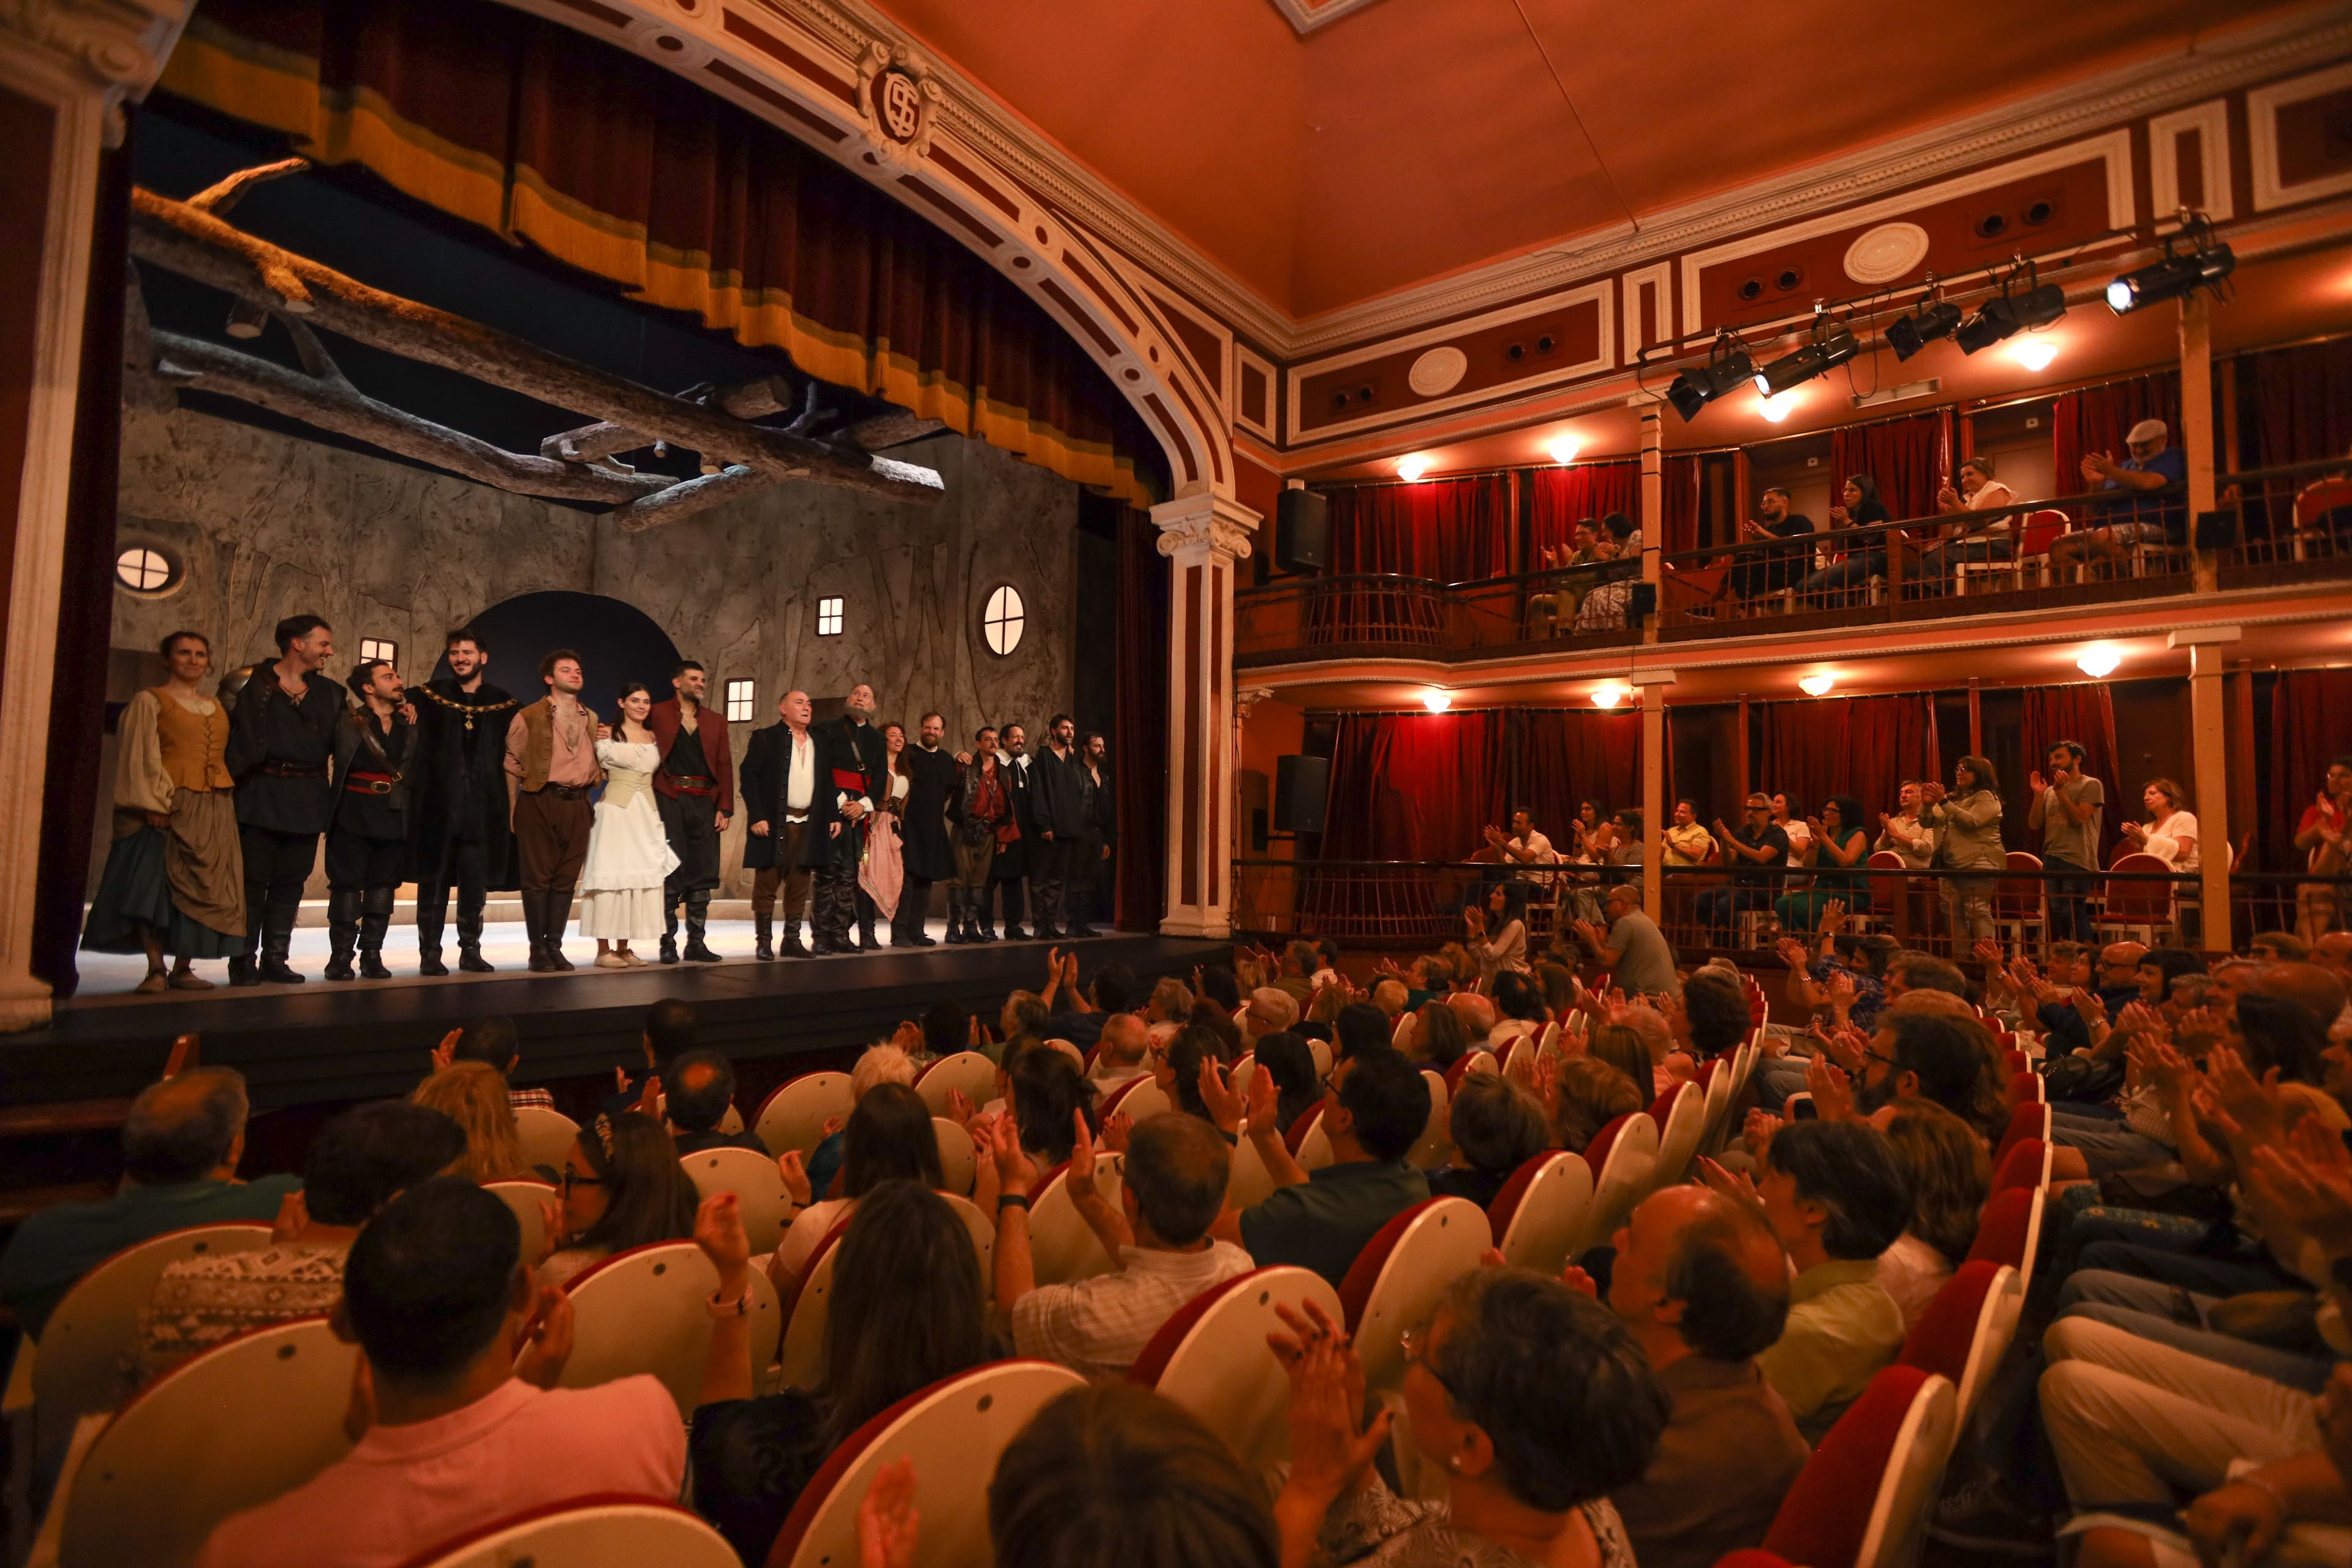 El Festival Iberoamericano del Siglo de Oro. Clásicos en Alcalá duplica las cifras de asistencia y aumenta un 30% el público en salas